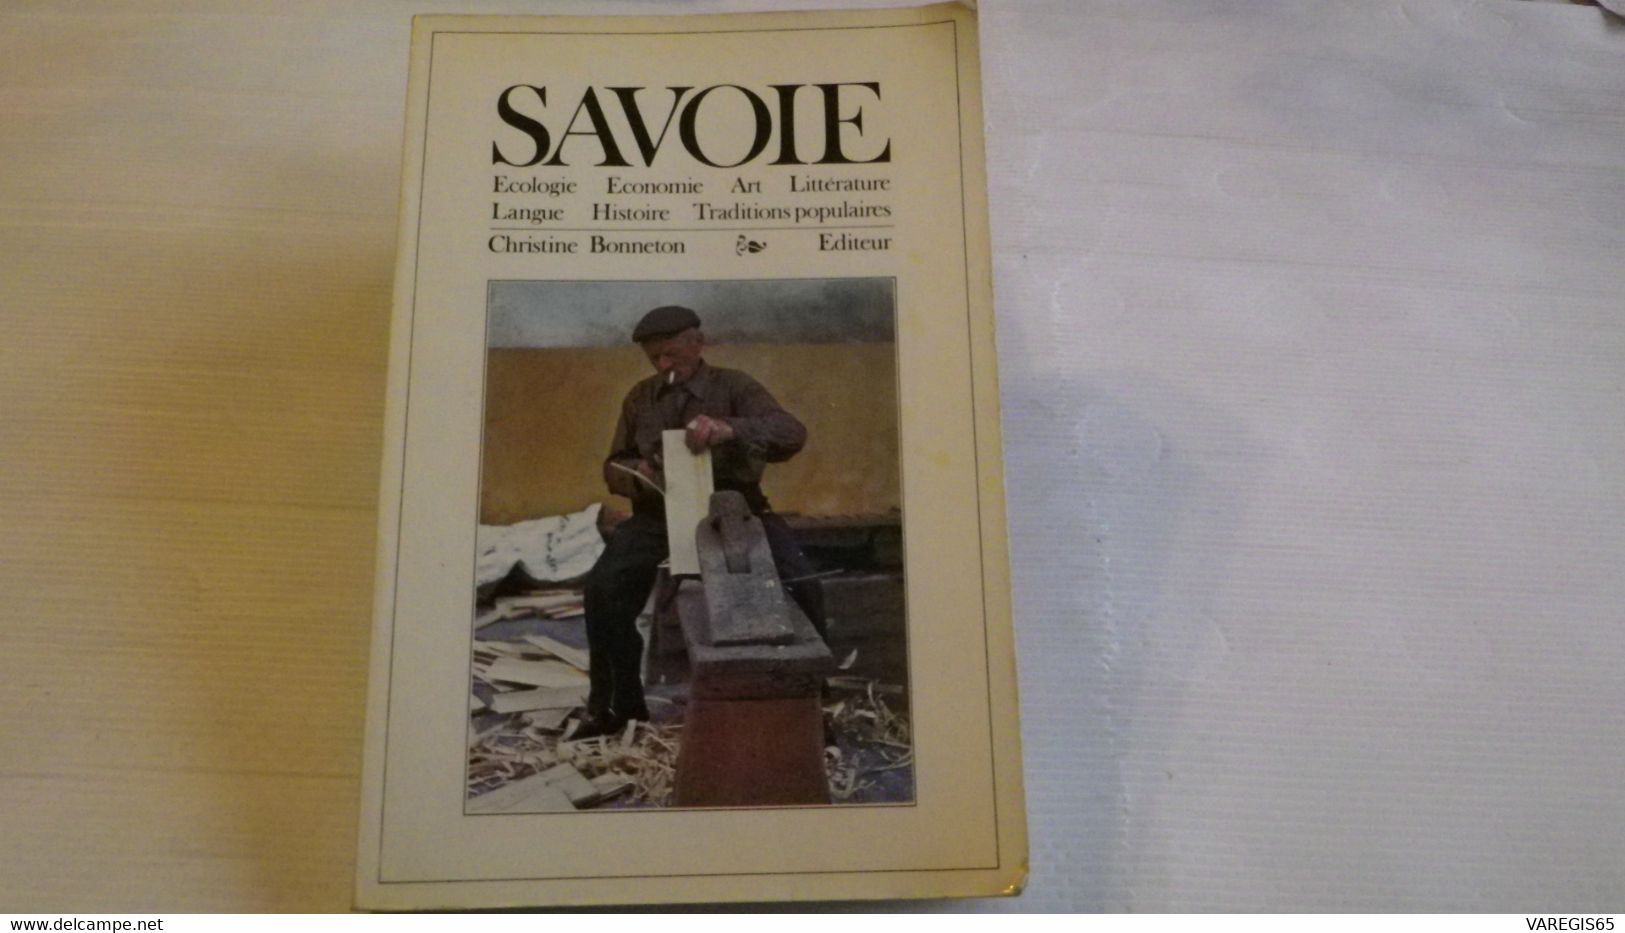 SAVOIE- ENCYCLOPEDIES BONNETON 1978 - ART, HISTOIRE, TRADITIONS , LANGUE, LITTERATURE, ECOLOGIE, ECONOMIE - Alpes - Pays-de-Savoie